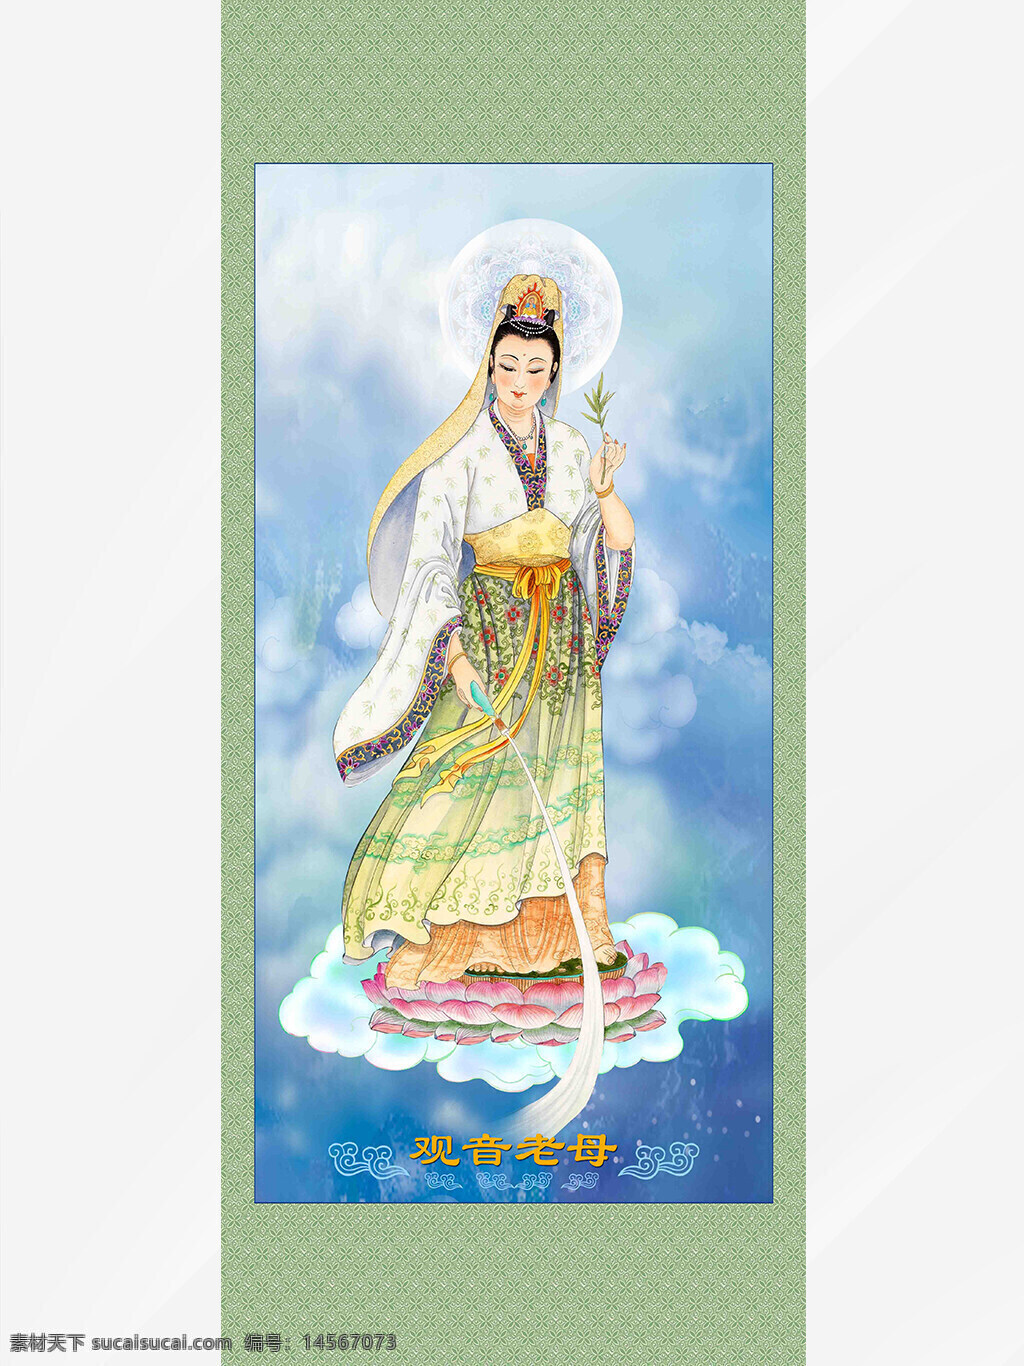 观音老母装饰画 观音 菩萨 背景 佛教 宗教 神话人物 宗教文化 佛教文化